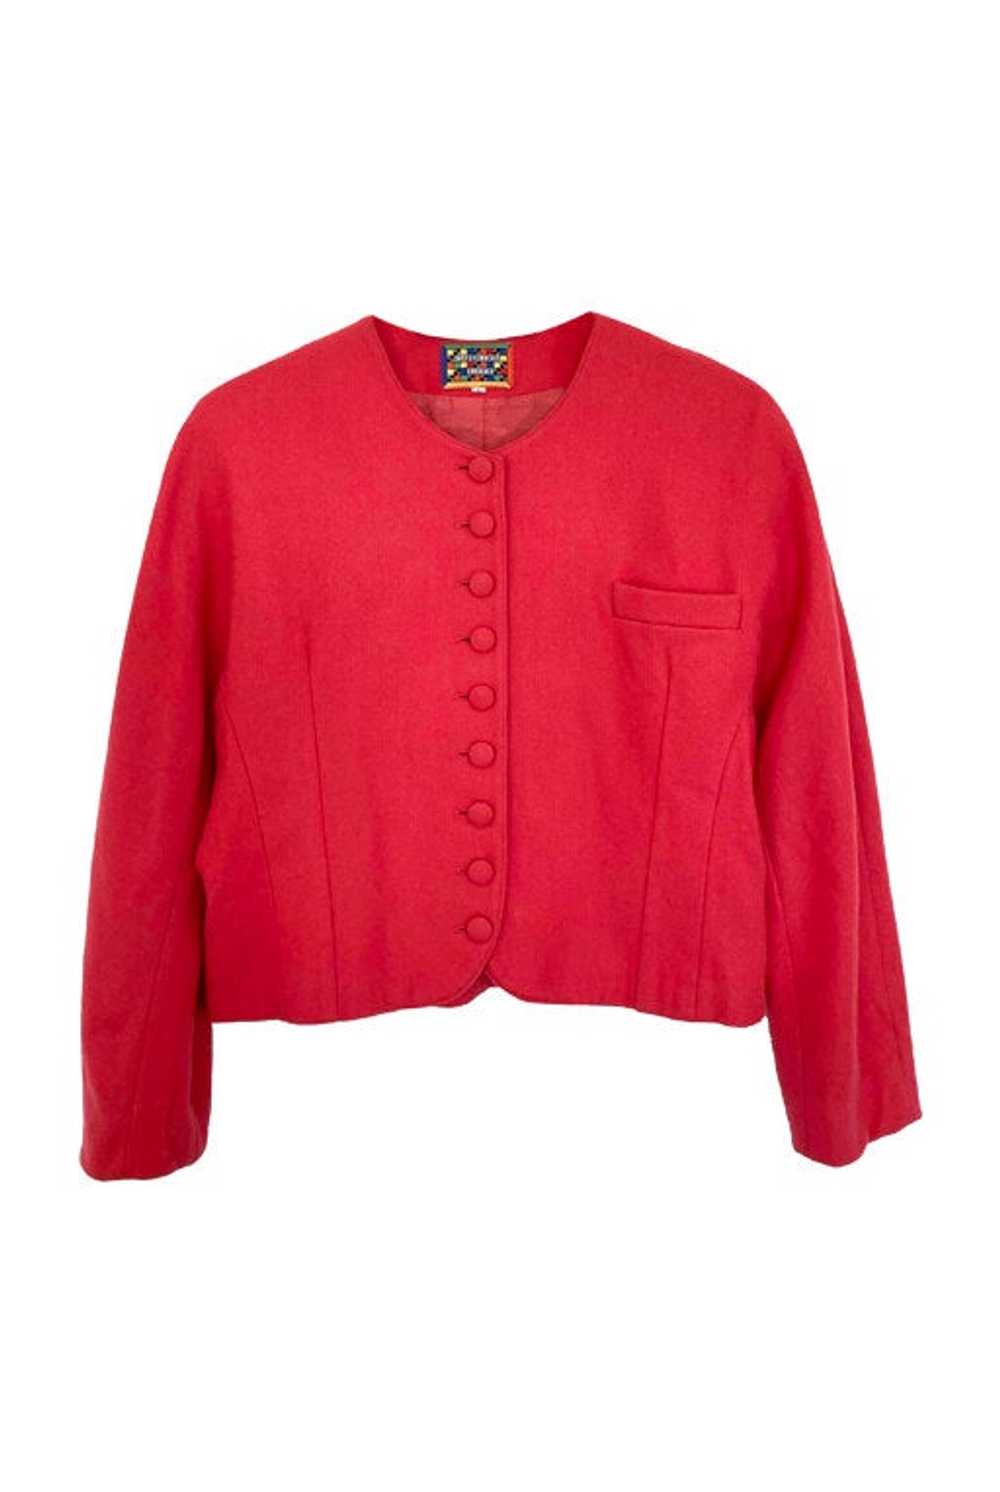 Wool jacket - Vintage Camaïeu cropped jacket in b… - image 1